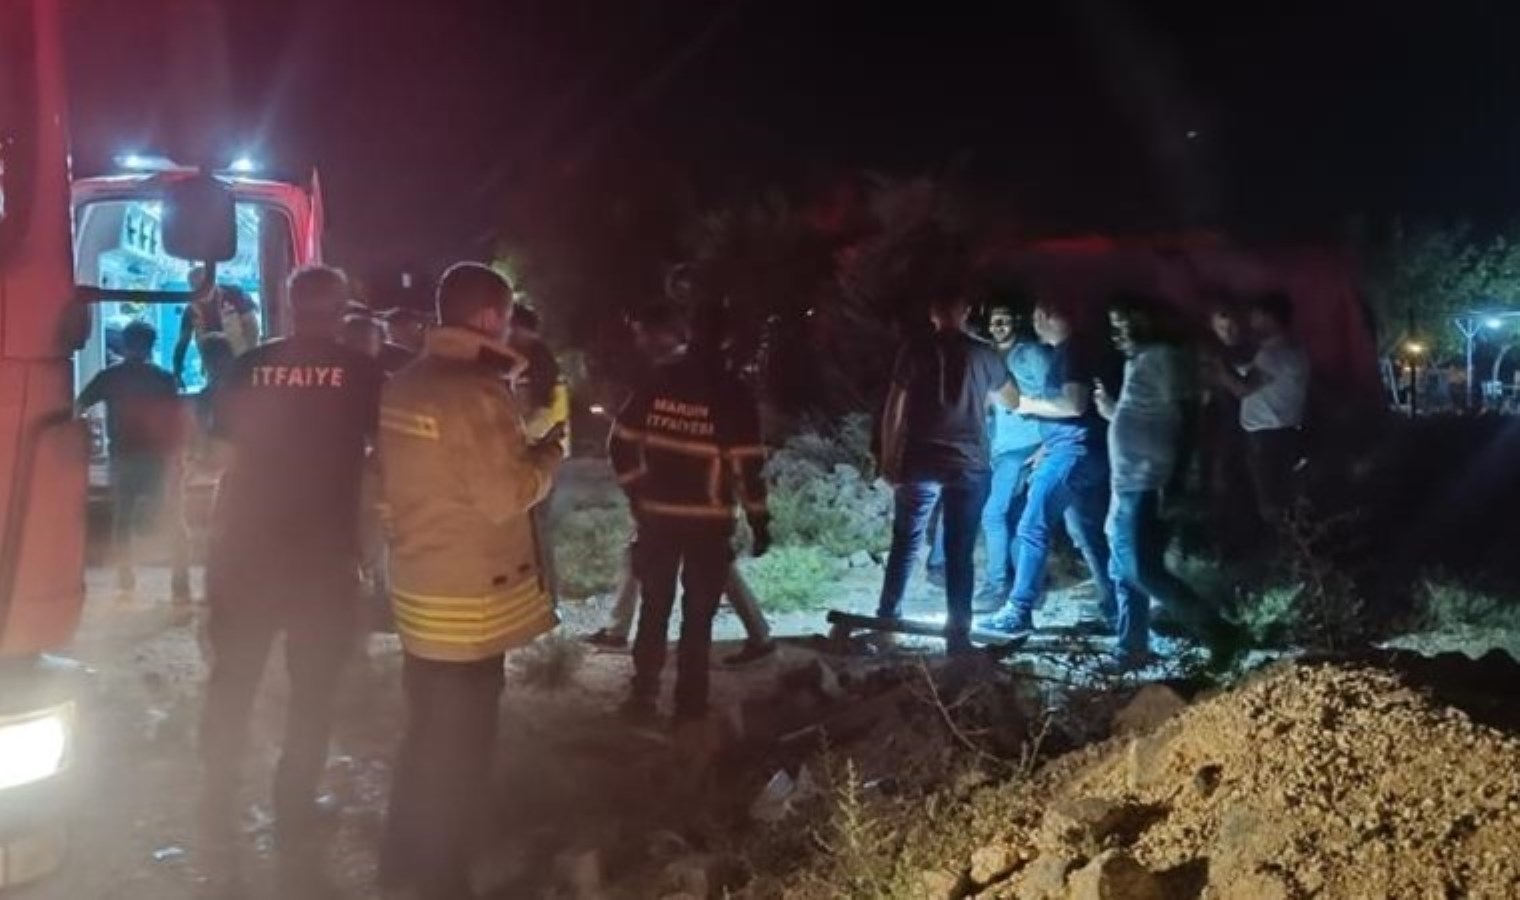 Mardin’de yürüyüş yapan kadın uçurumdan düştü